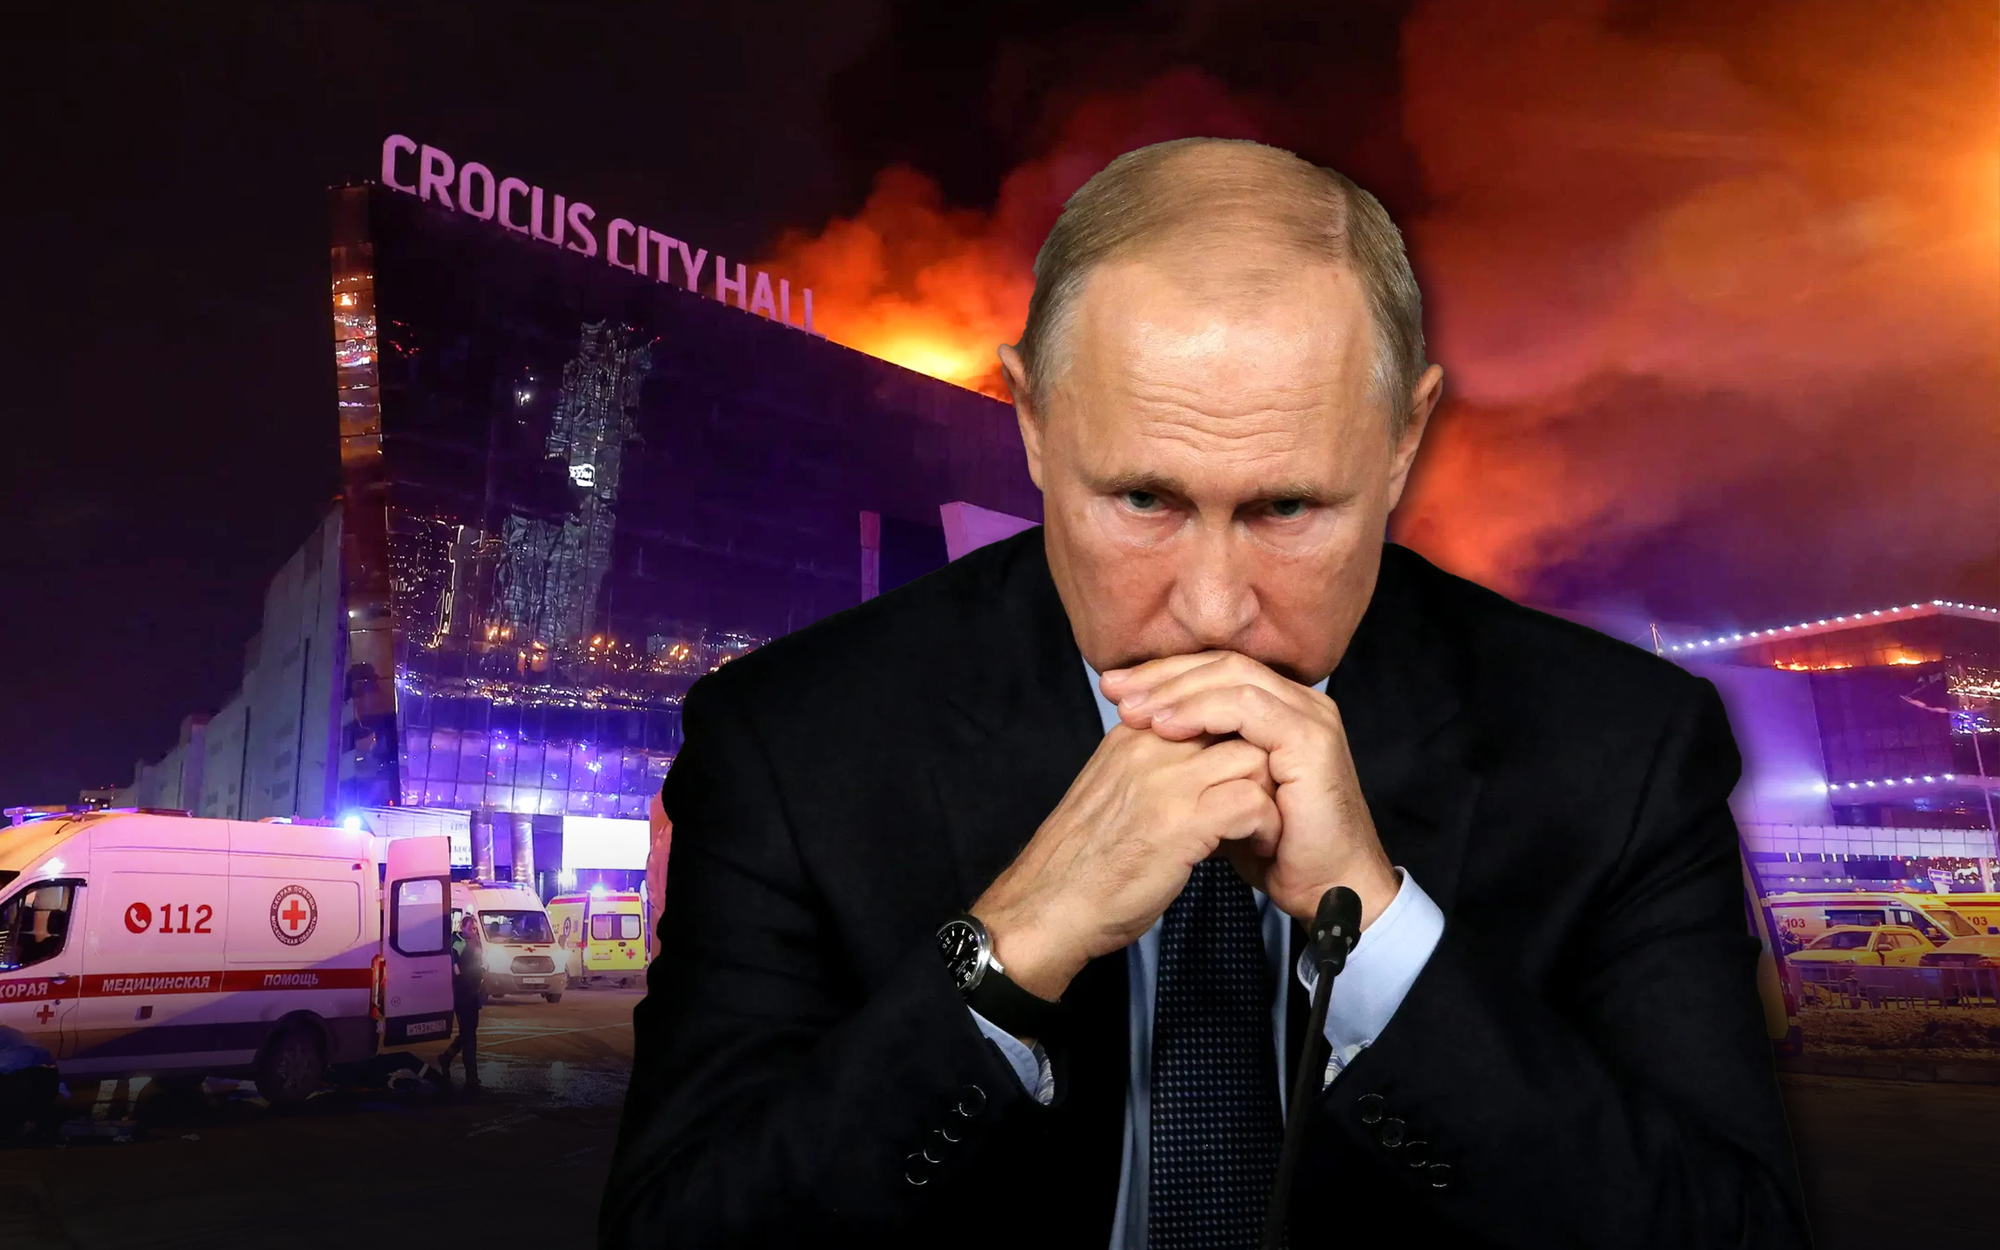 Xuất hiện nhân vật bí ẩn thao túng vụ khủng bố: Công hàm gửi thẳng đến Ukraine - Ông Putin hành động 